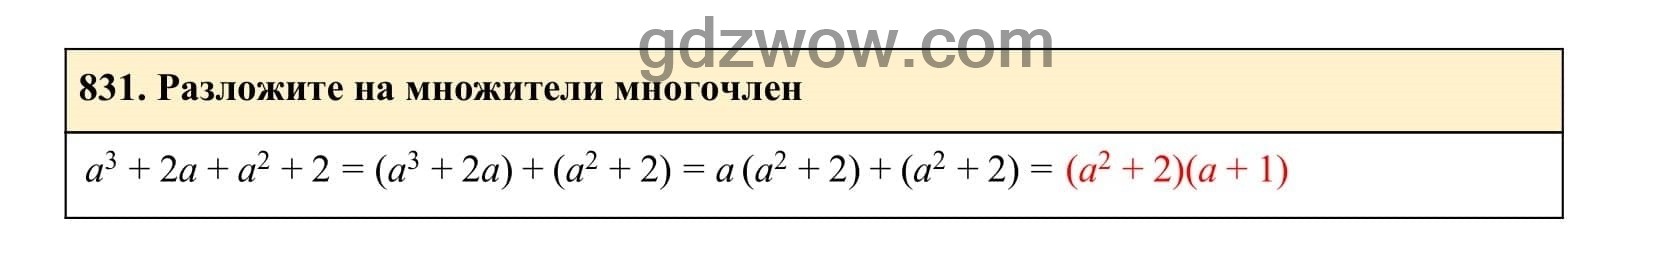 Упражнение 831 - ГДЗ по Алгебре 7 класс Учебник Макарычев (решебник) - GDZwow